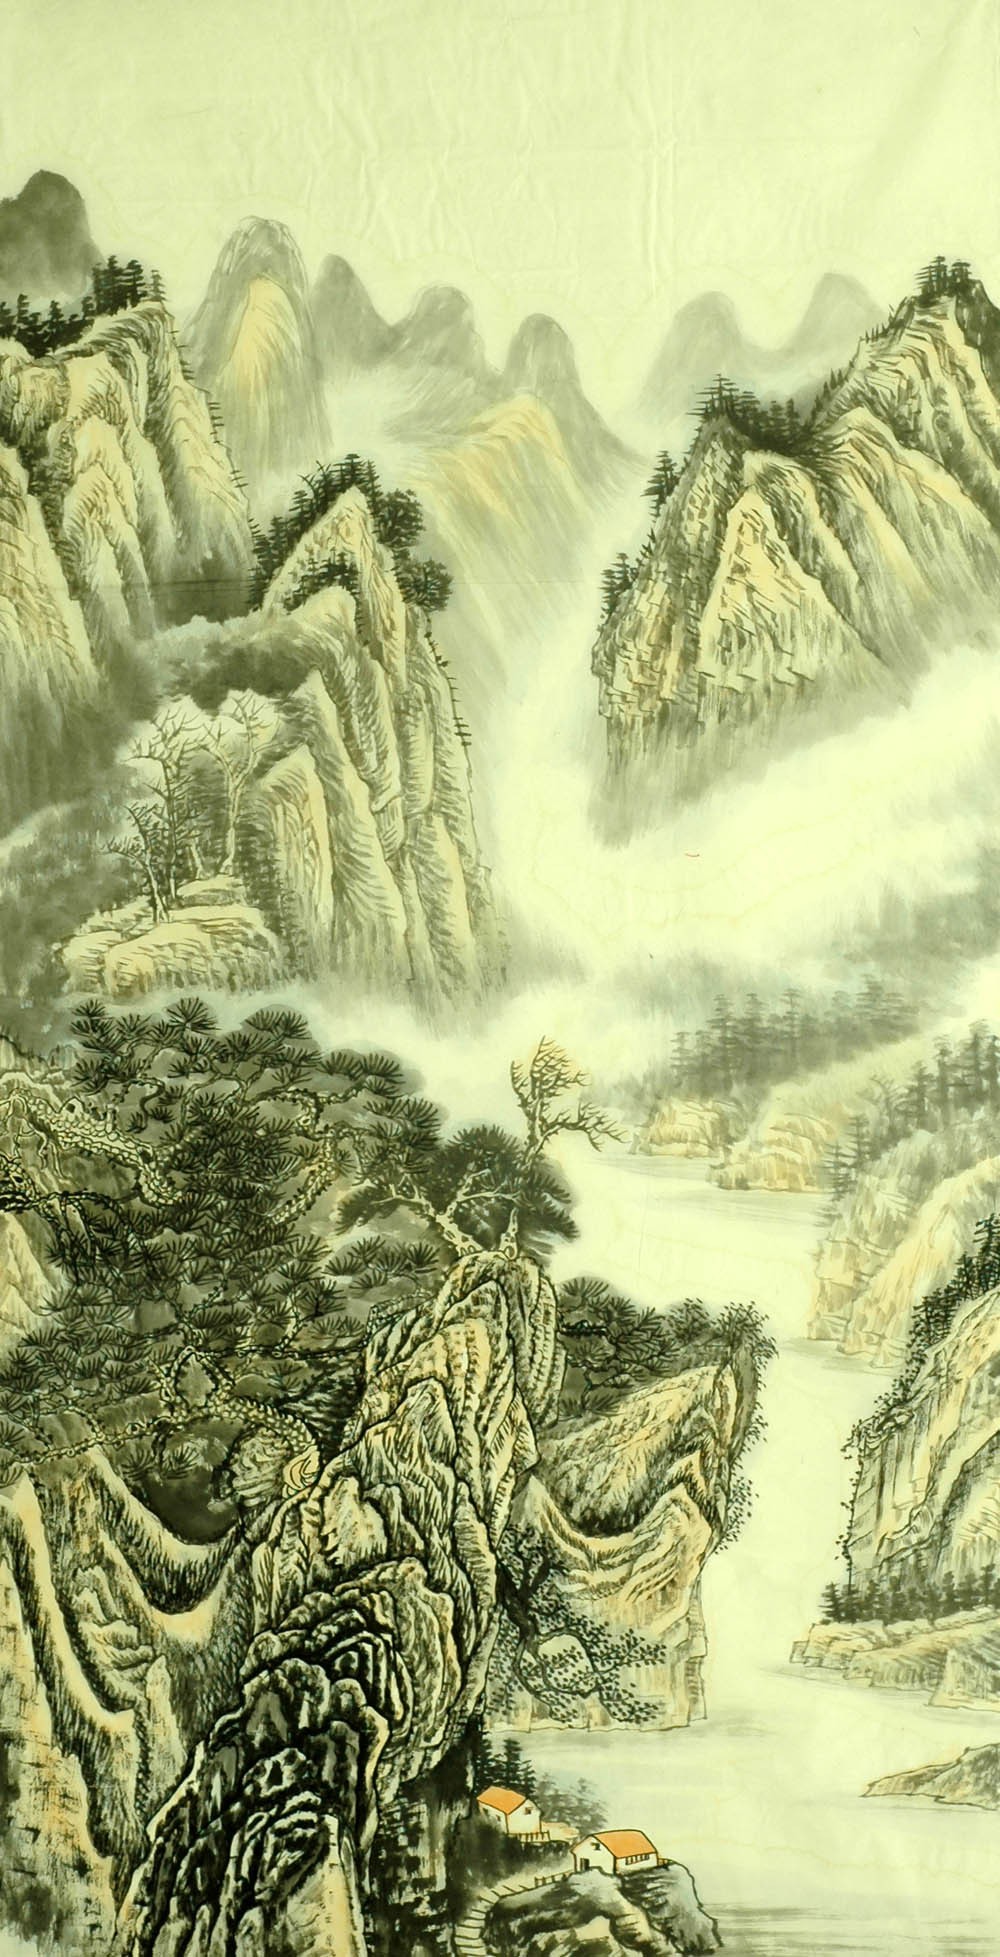 Chinese Landscape Painting - CNAG007156